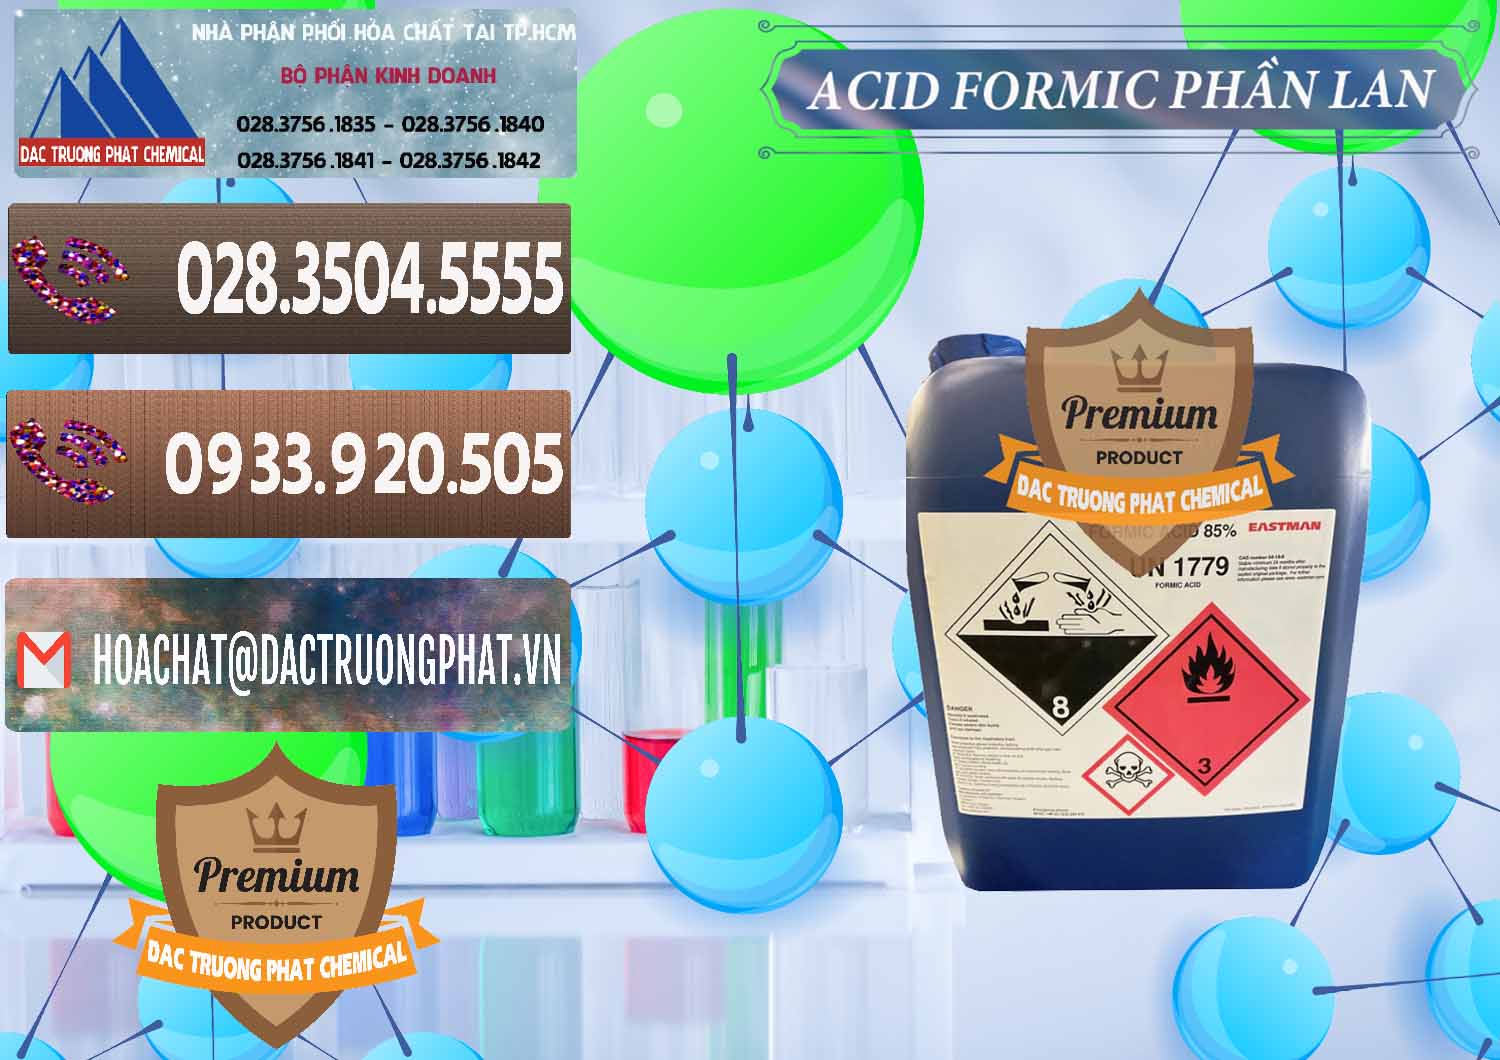 Nhà phân phối _ bán Acid Formic - Axit Formic Phần Lan Finland - 0376 - Chuyên phân phối - cung cấp hóa chất tại TP.HCM - hoachatviet.net